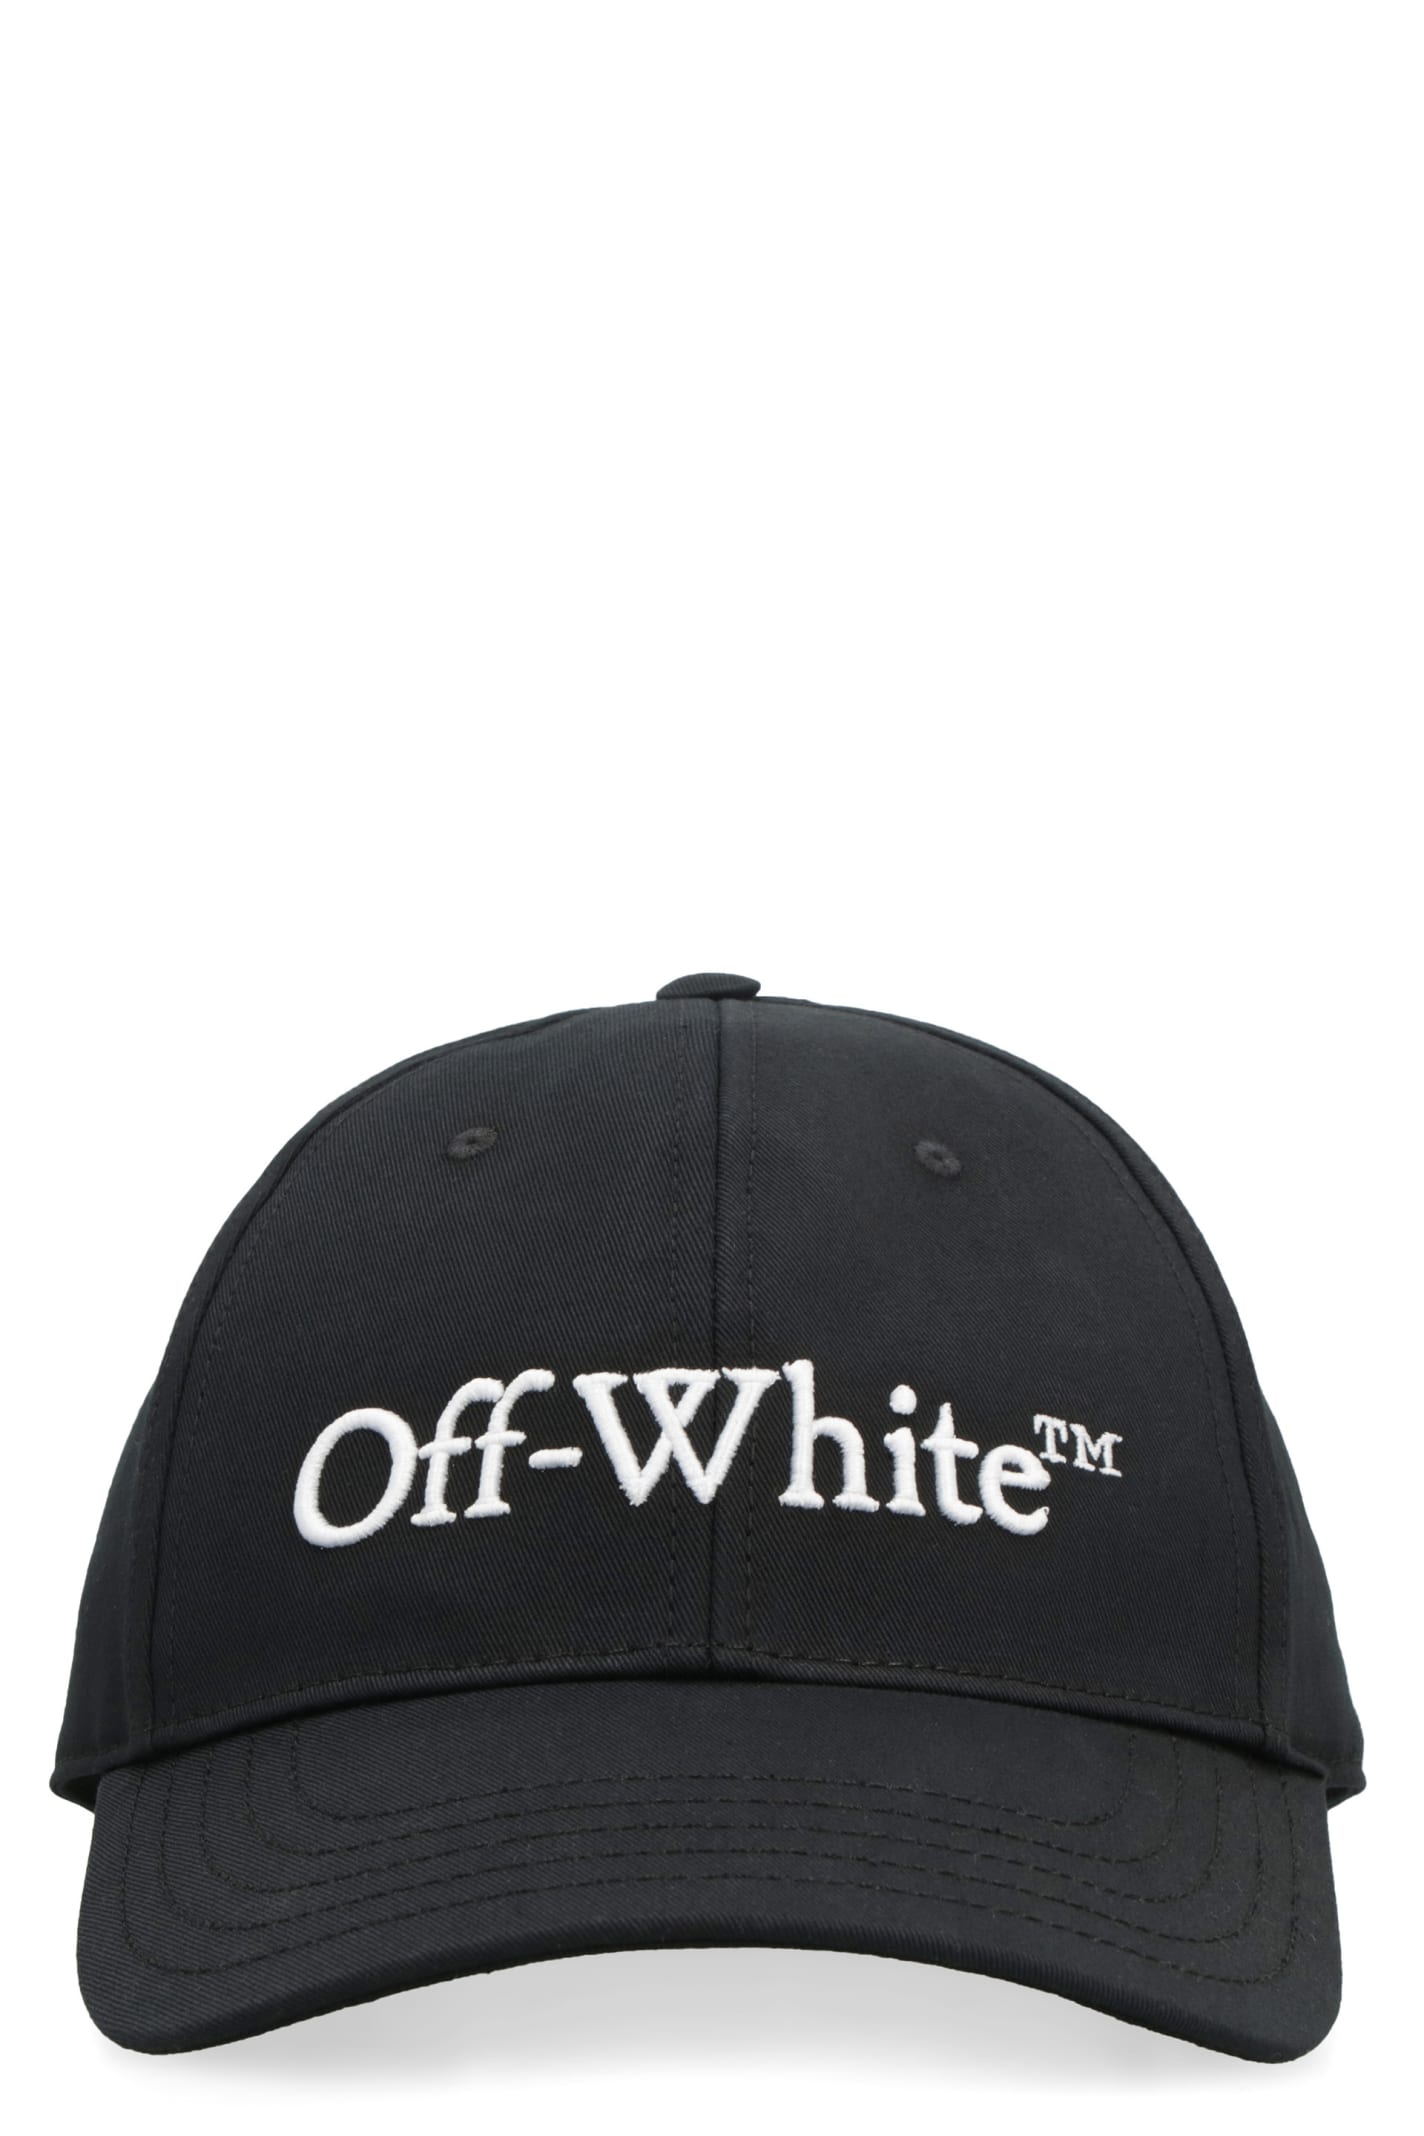 OFF-WHITE LOGO BASEBALL CAP